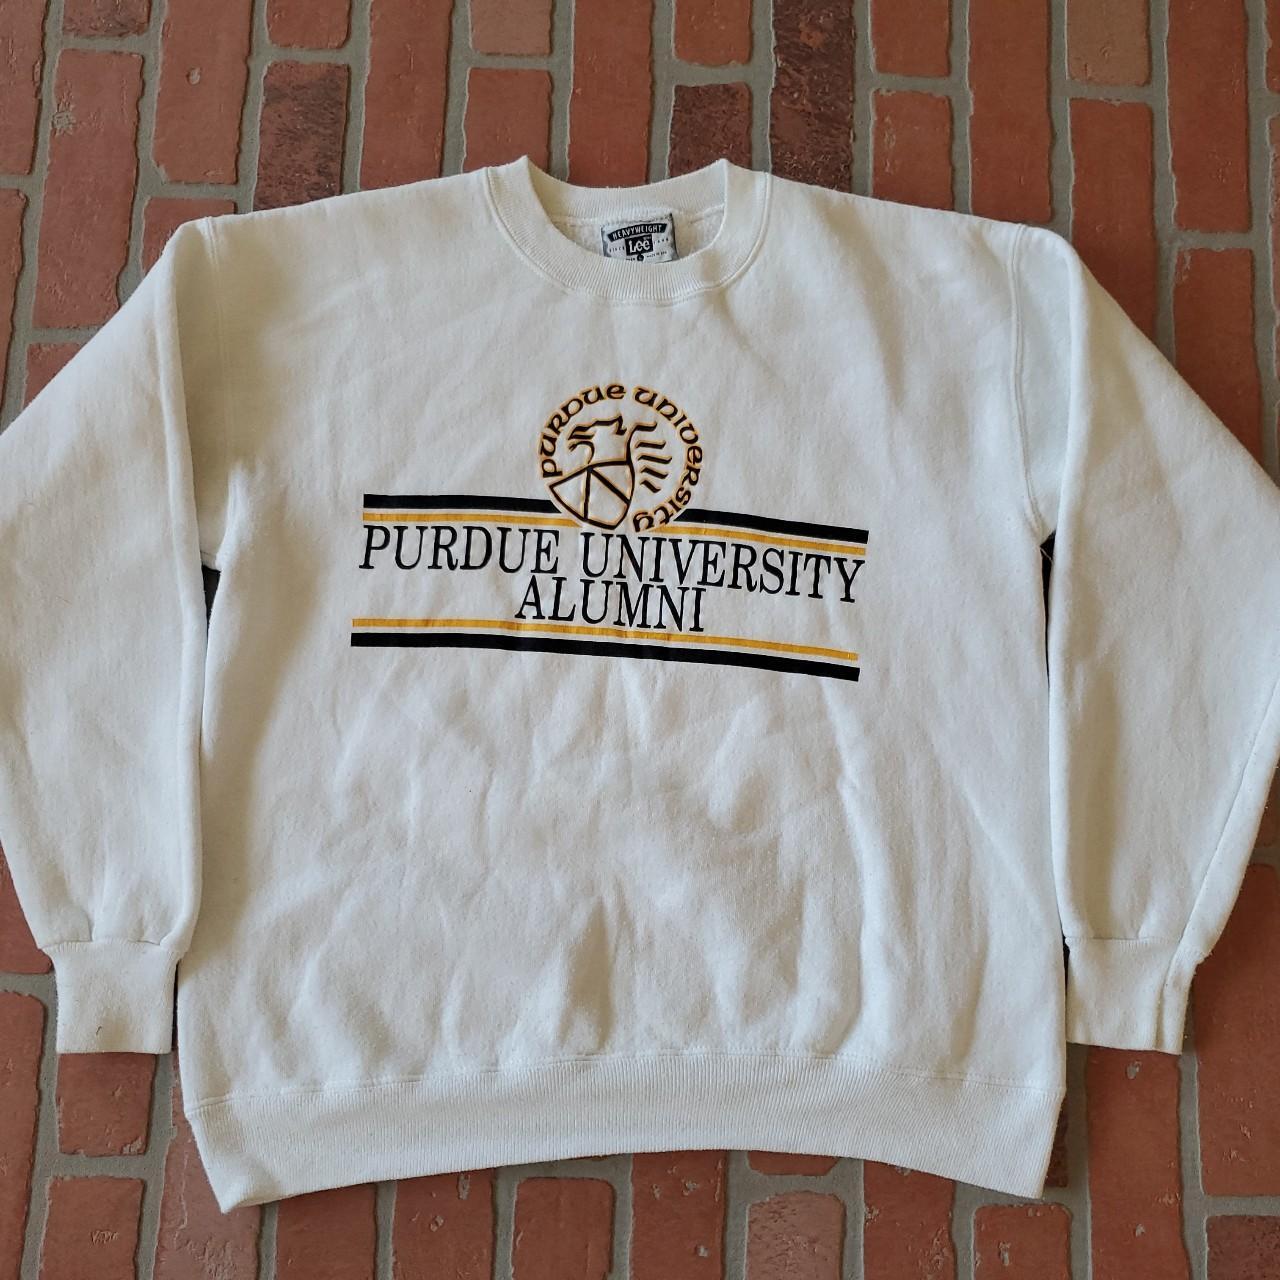 Vintage 90s Purdue University Alumni Sweatshirt... - Depop